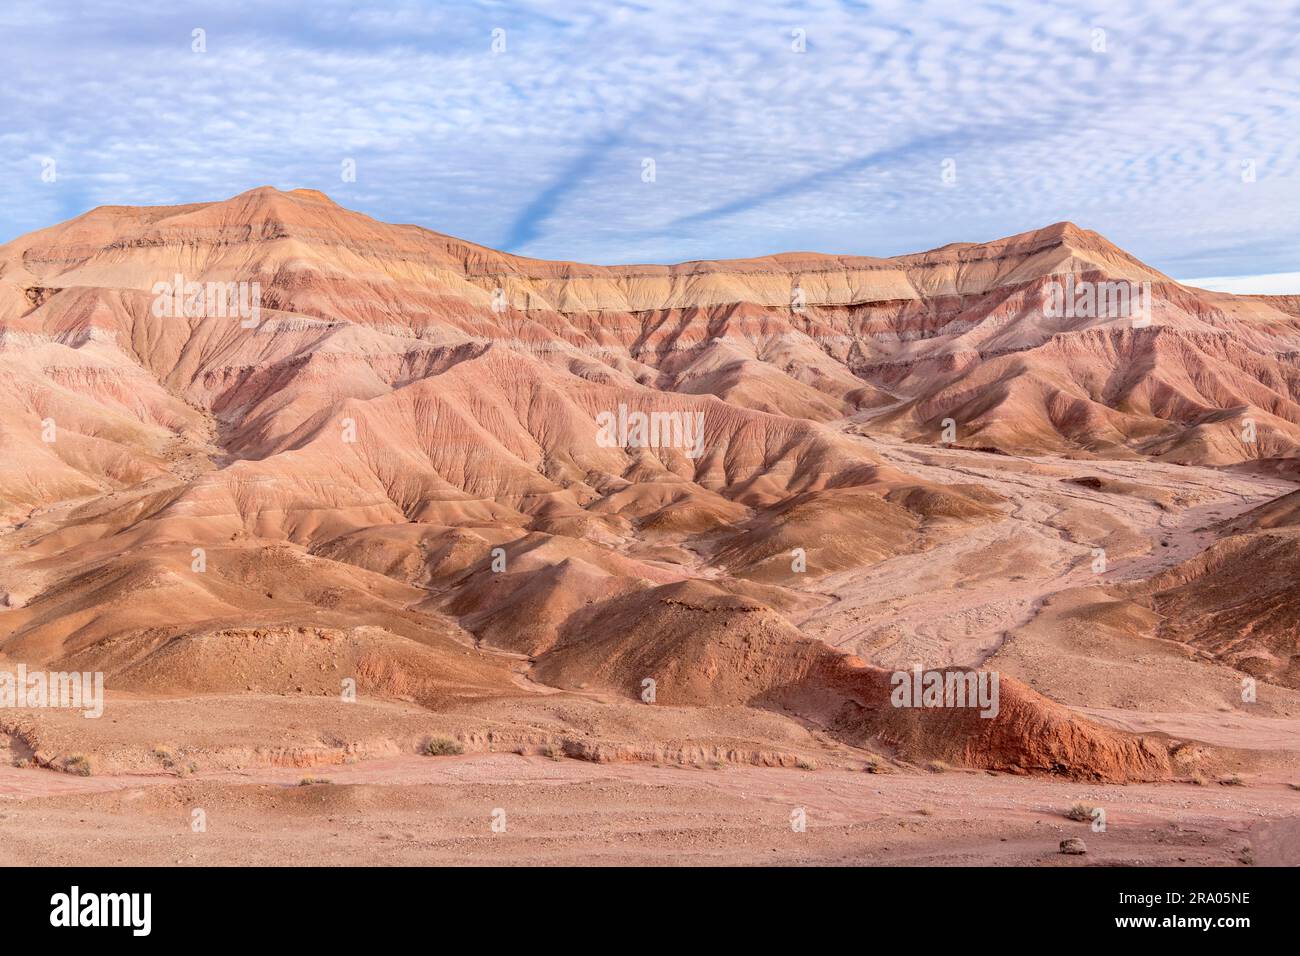 Caractéristiques érosionnelles, mesas, collines et paysage désertique, le désert peint, près de tuba City, AZ, USA, Par Dominique Braud/Dembinsky photo Assoc Banque D'Images